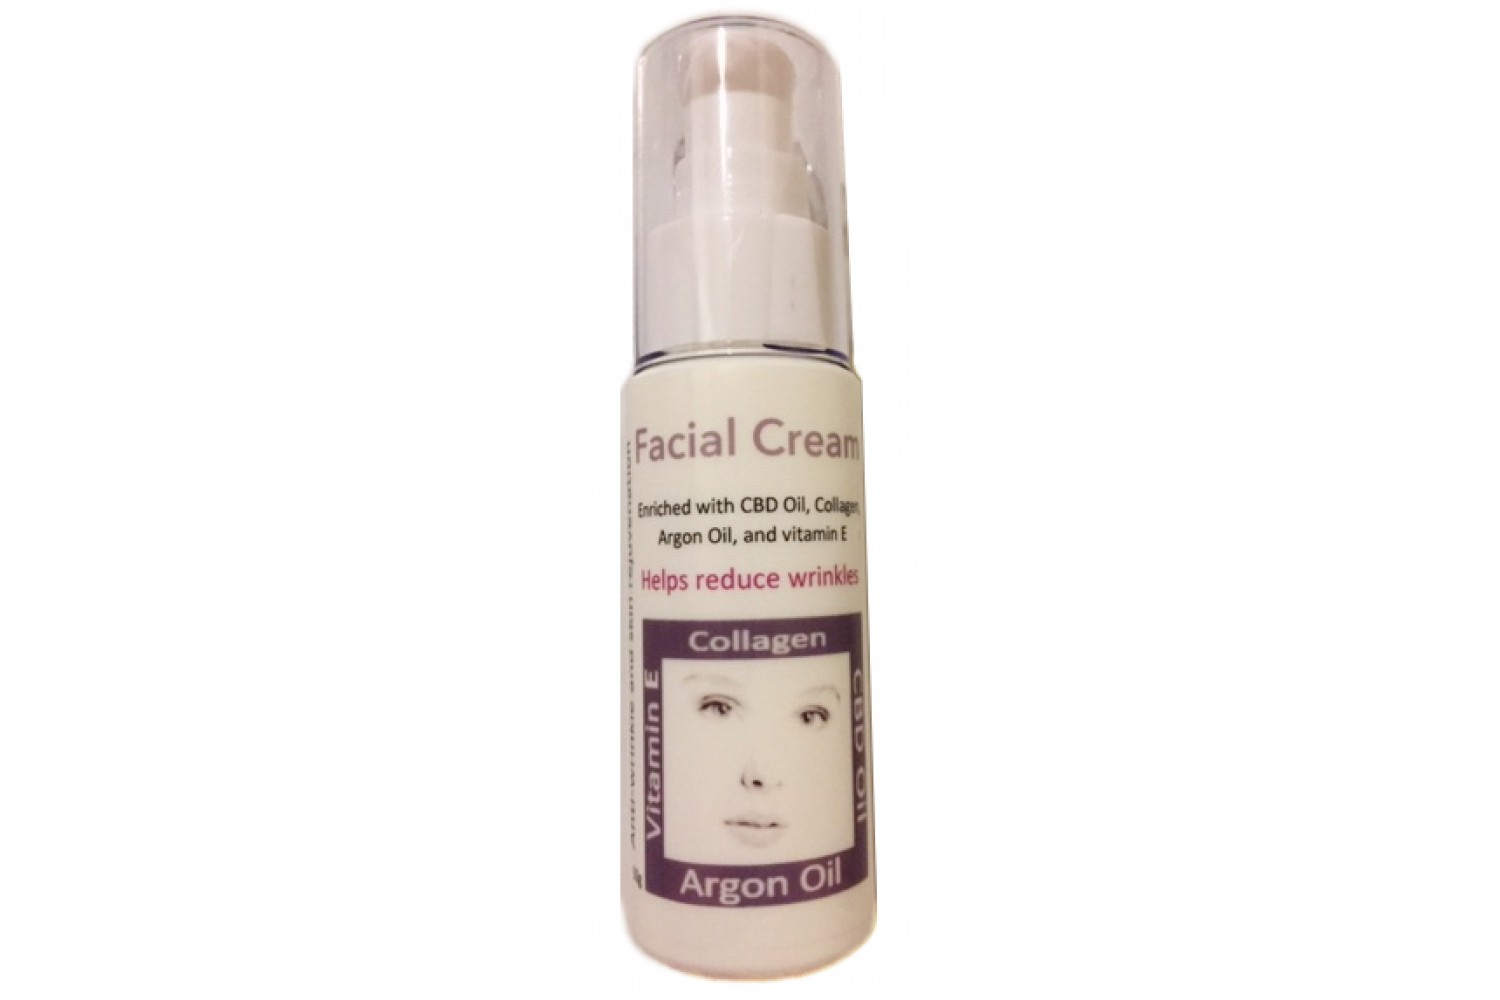 Facial Cream with CBD oil